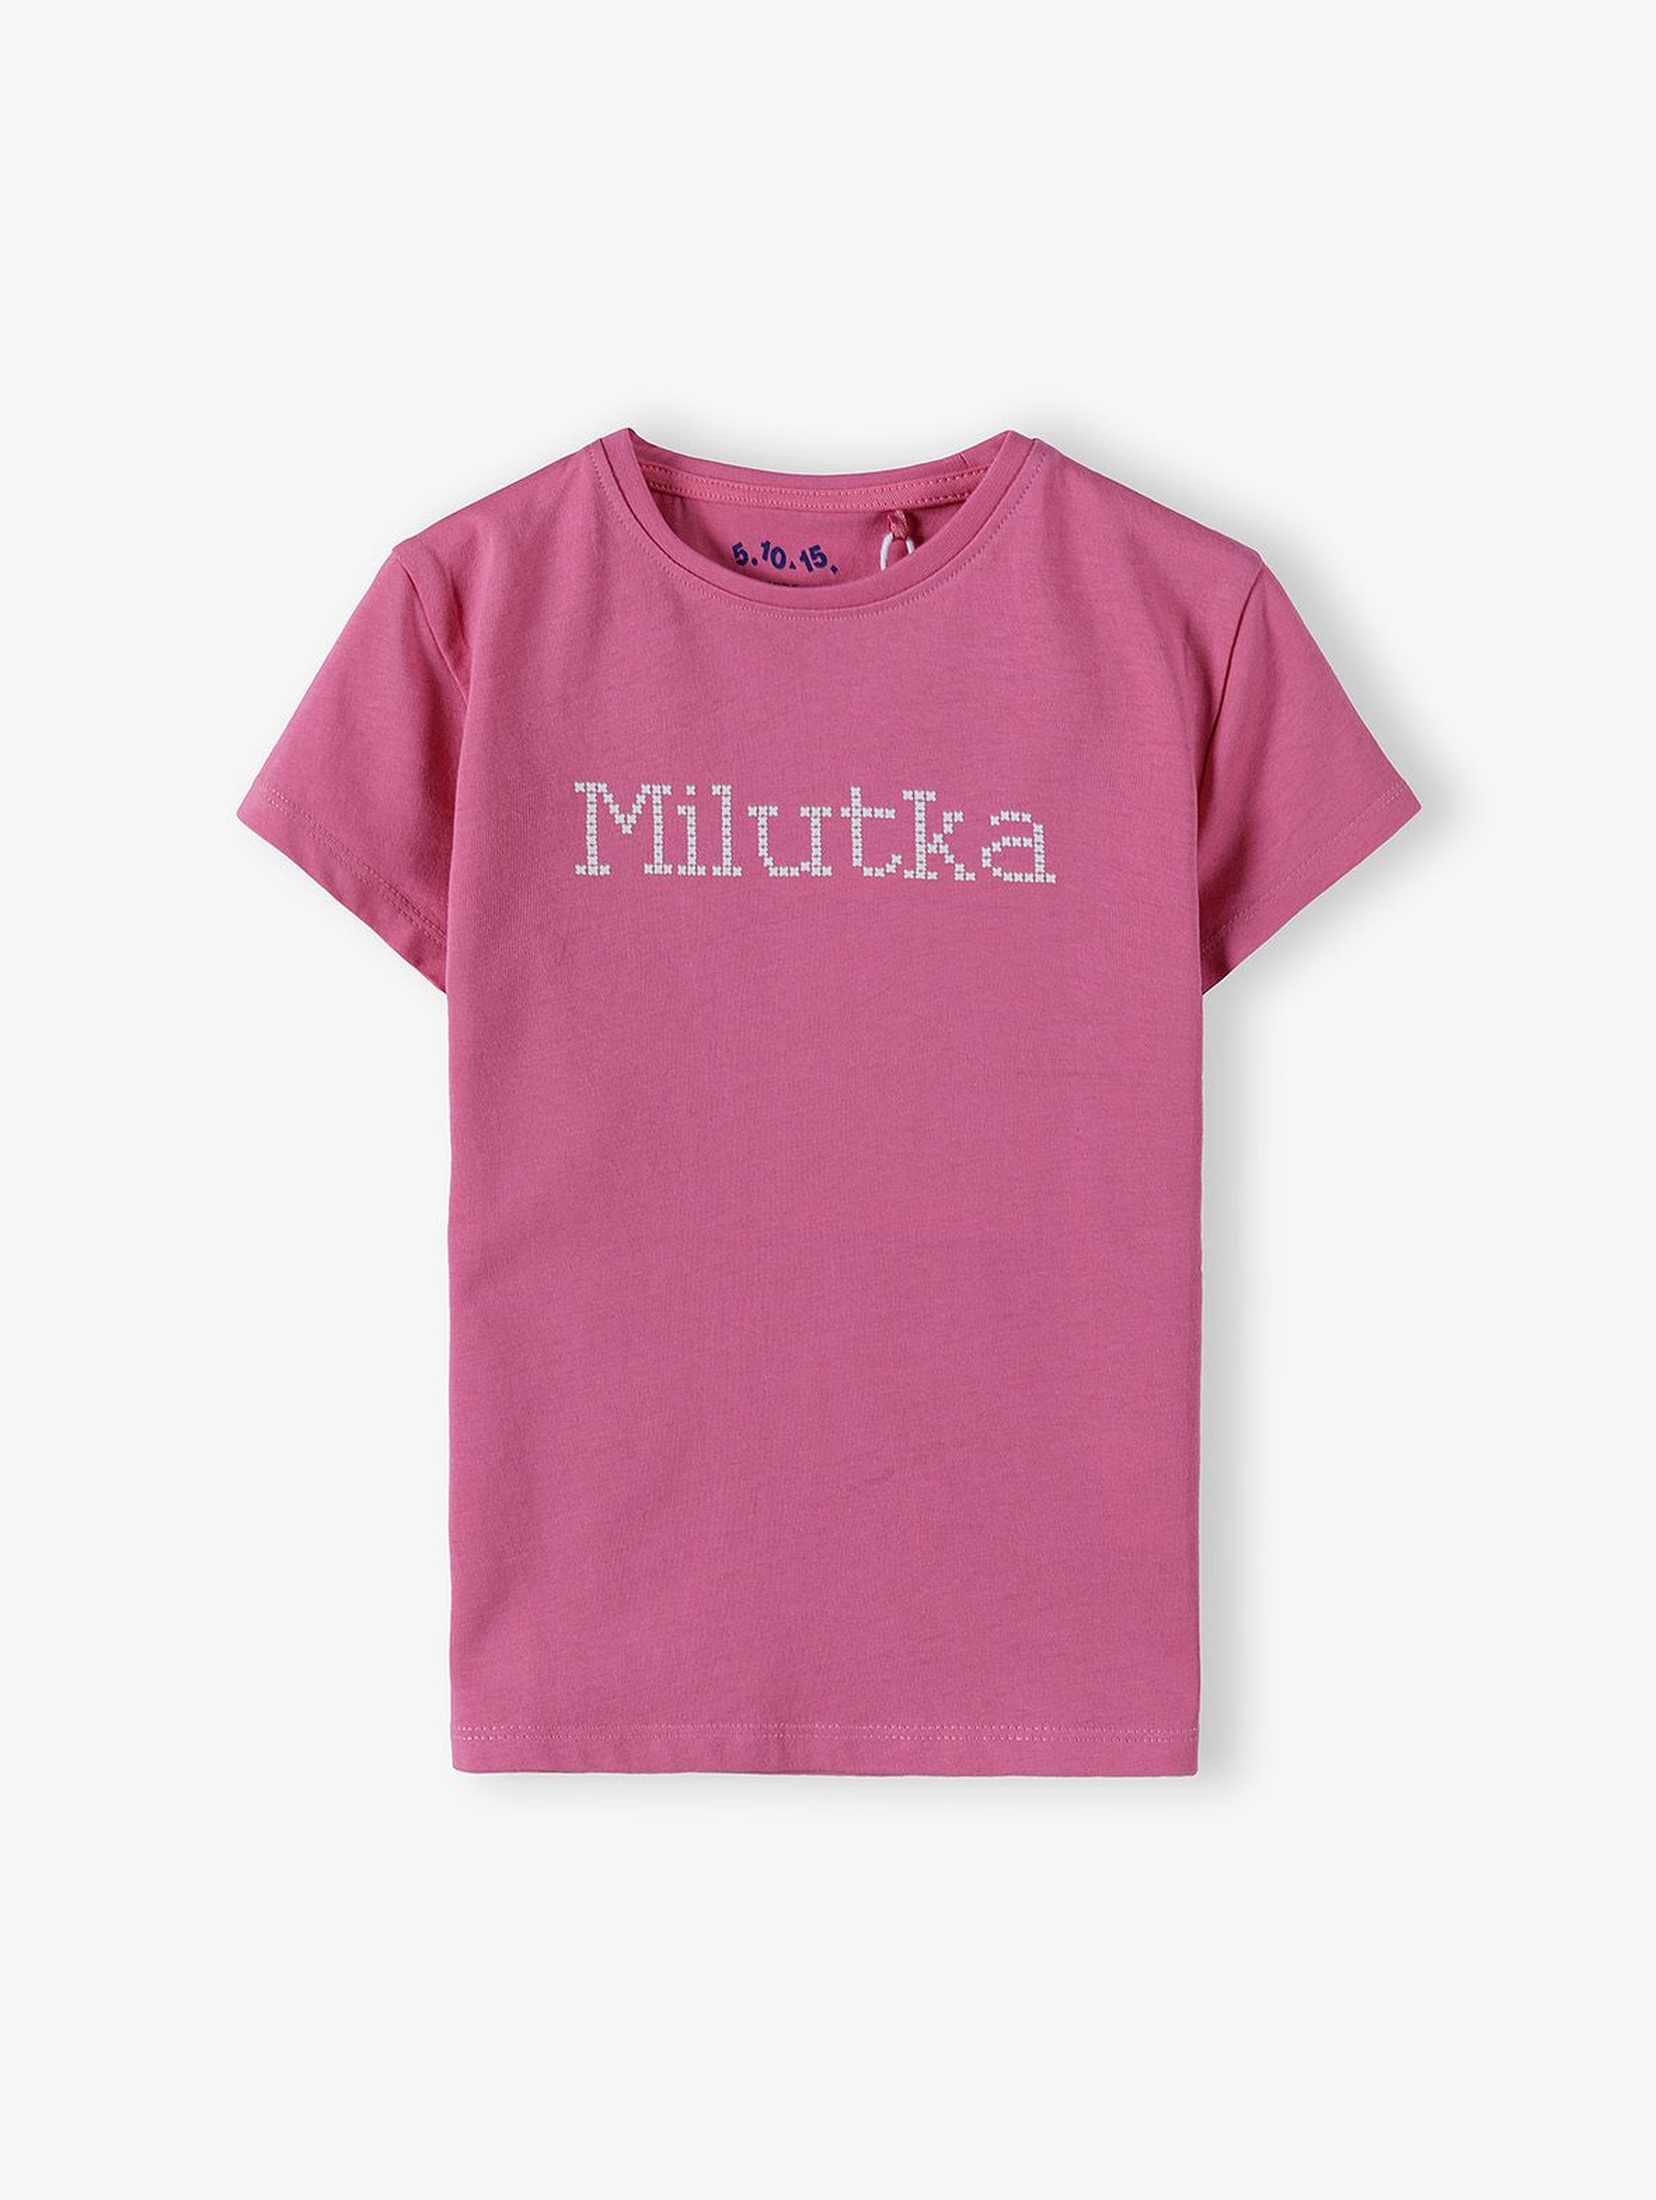 Bawełniany różowy t-shirt dziewczęcy z napisem Milutka